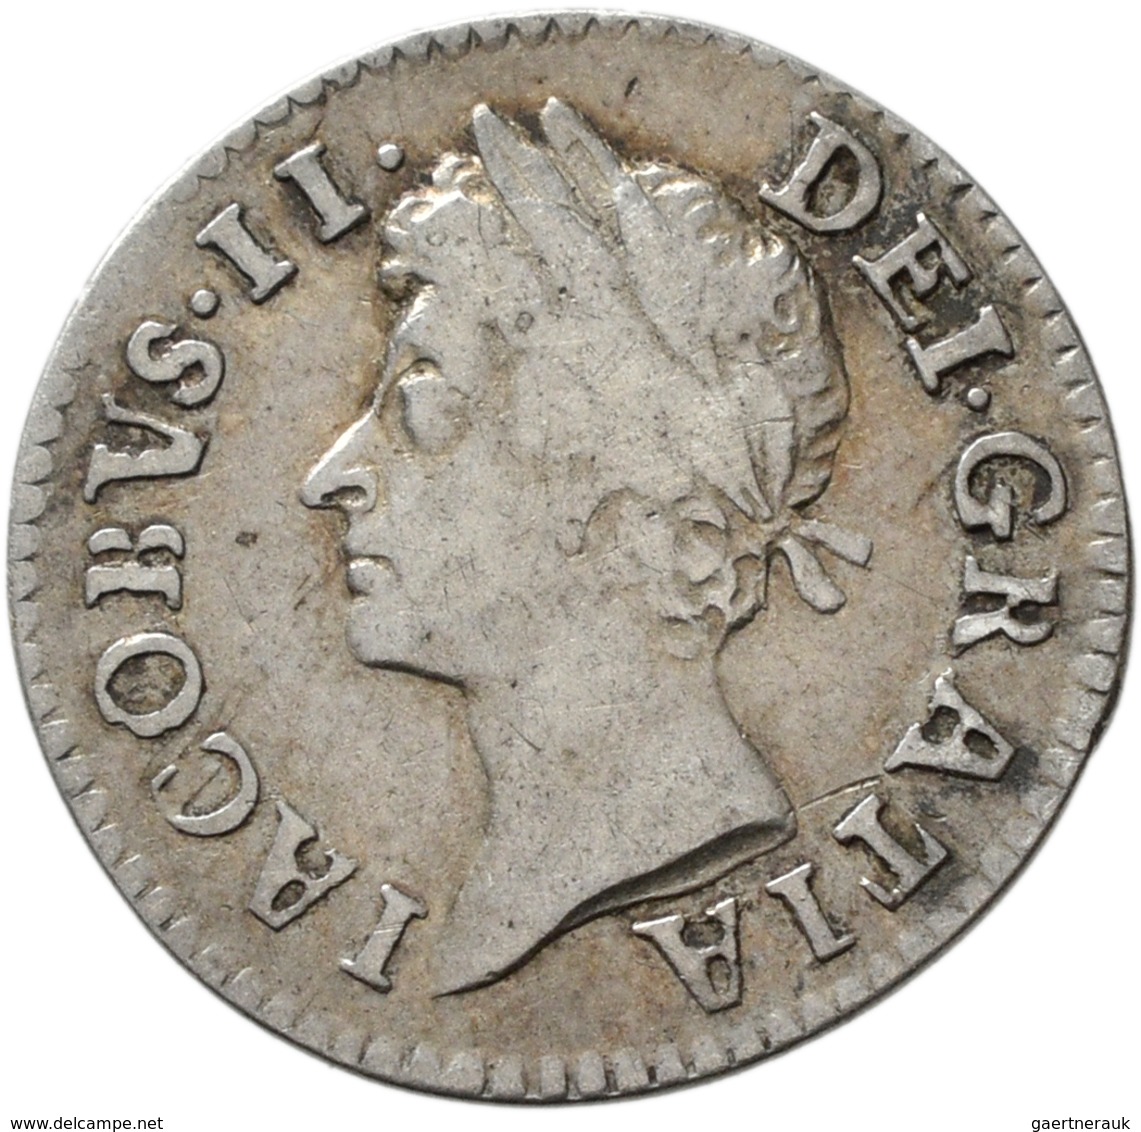 Großbritannien: James II. 1685-1688: Maundy Set 1,2,3,4 Pence 1686, sehr schön, sehr schön-vorzüglic